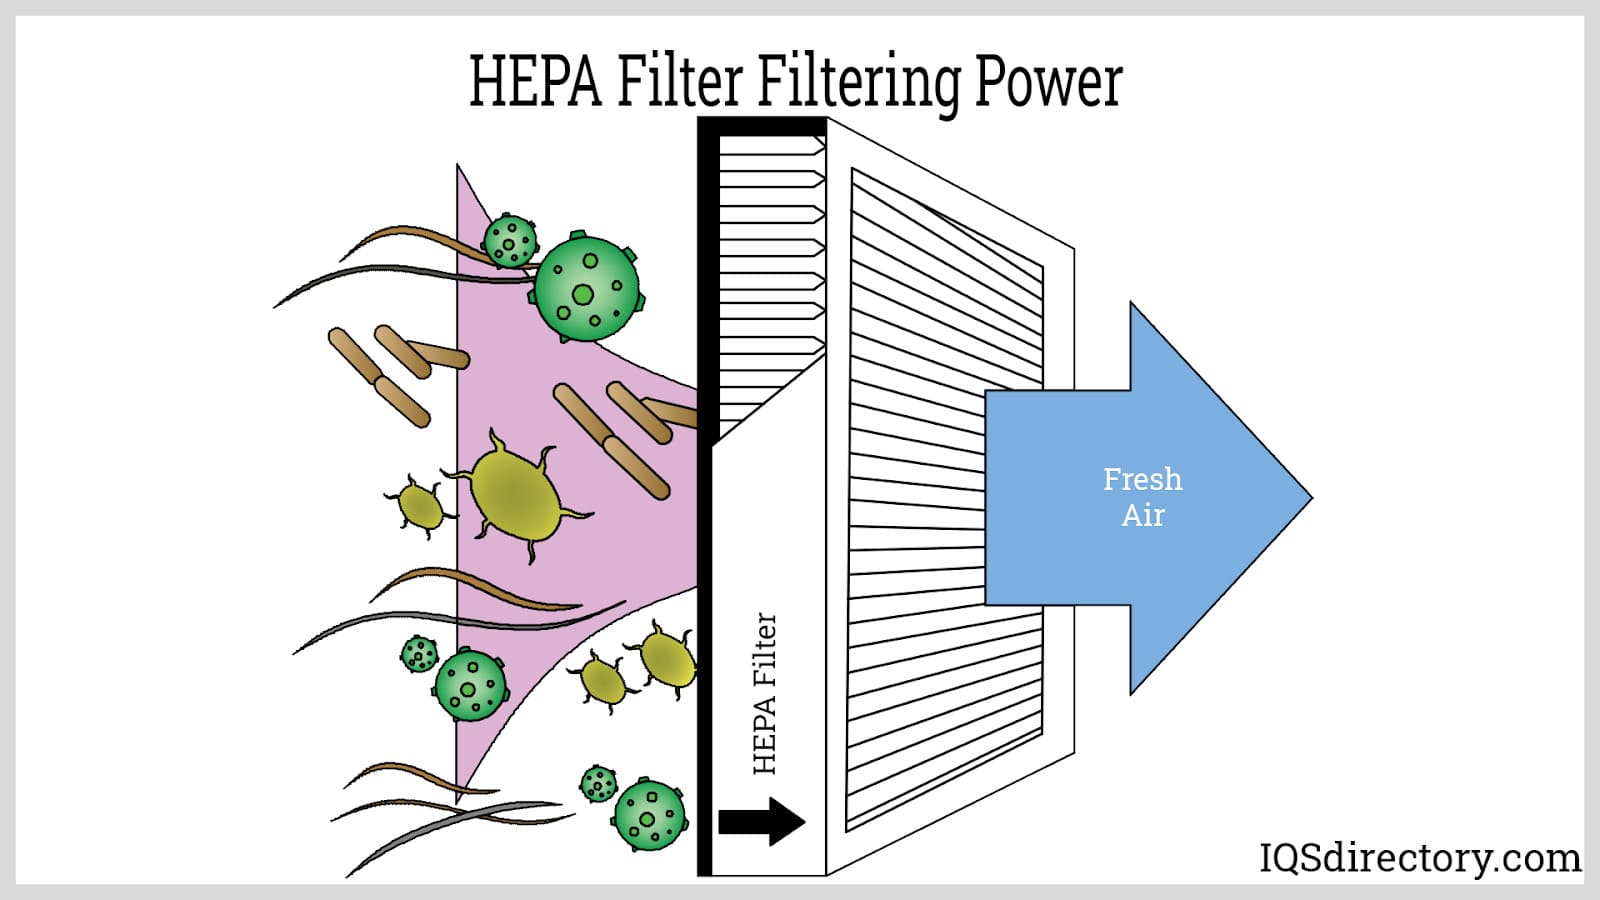 HEPA Filter Filtering Power